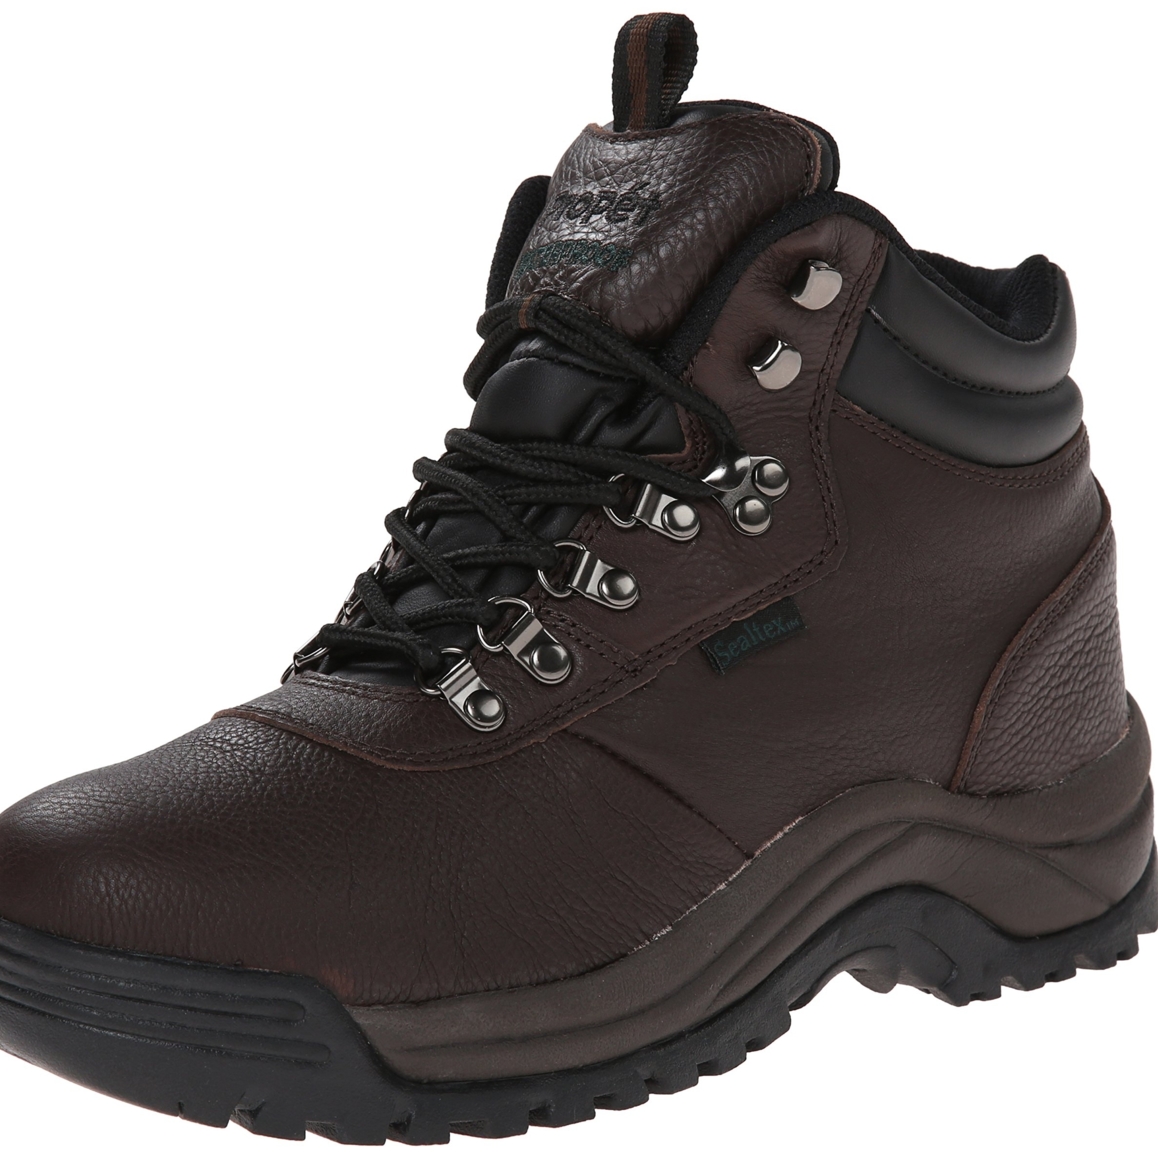 Propet Men's Cliff Walker Hiking Boot Bronco Brown - M3188BRO - BRONCO BROWN, 16-D